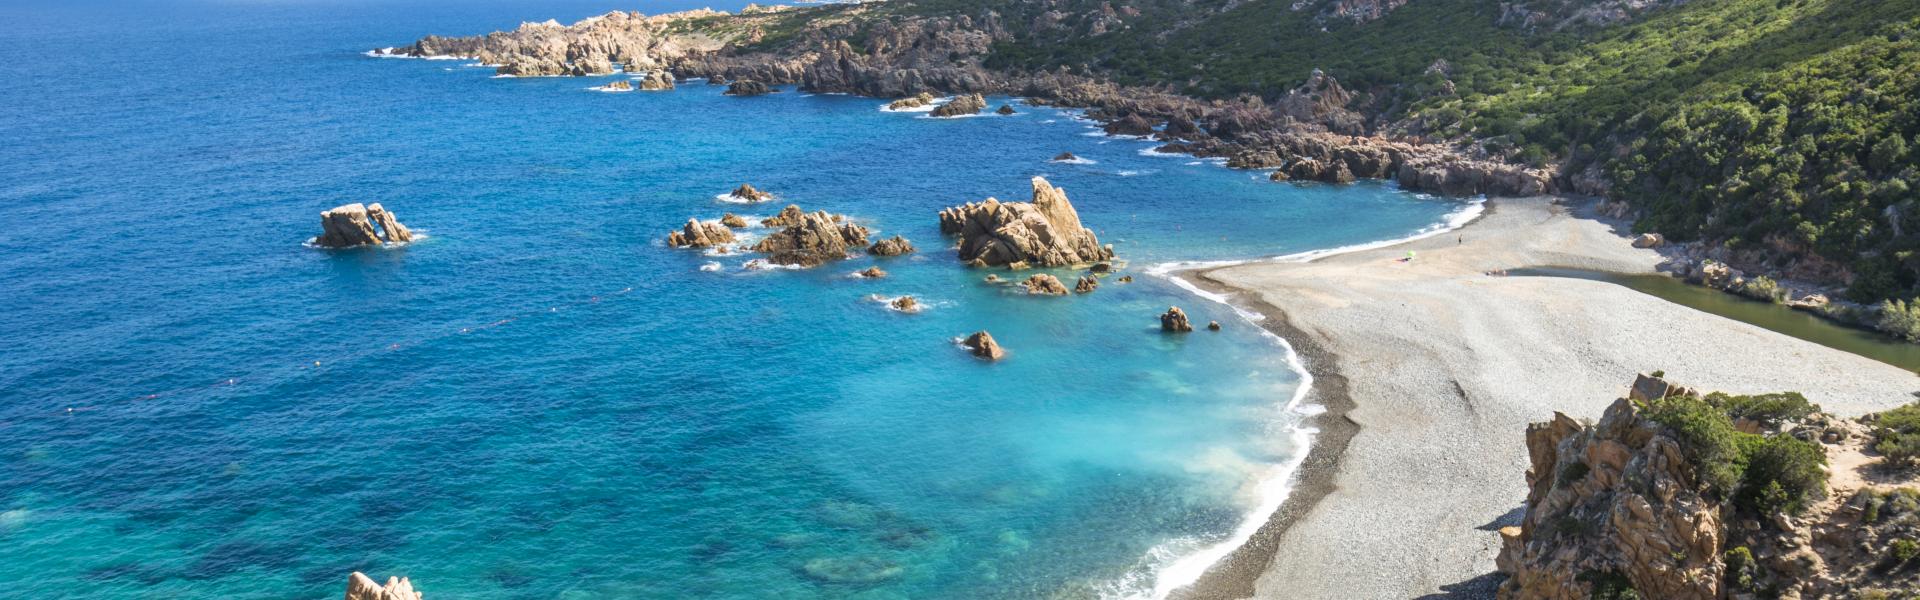 Ferienwohnung und Ferienhaus auf Sardinien - e-domizil